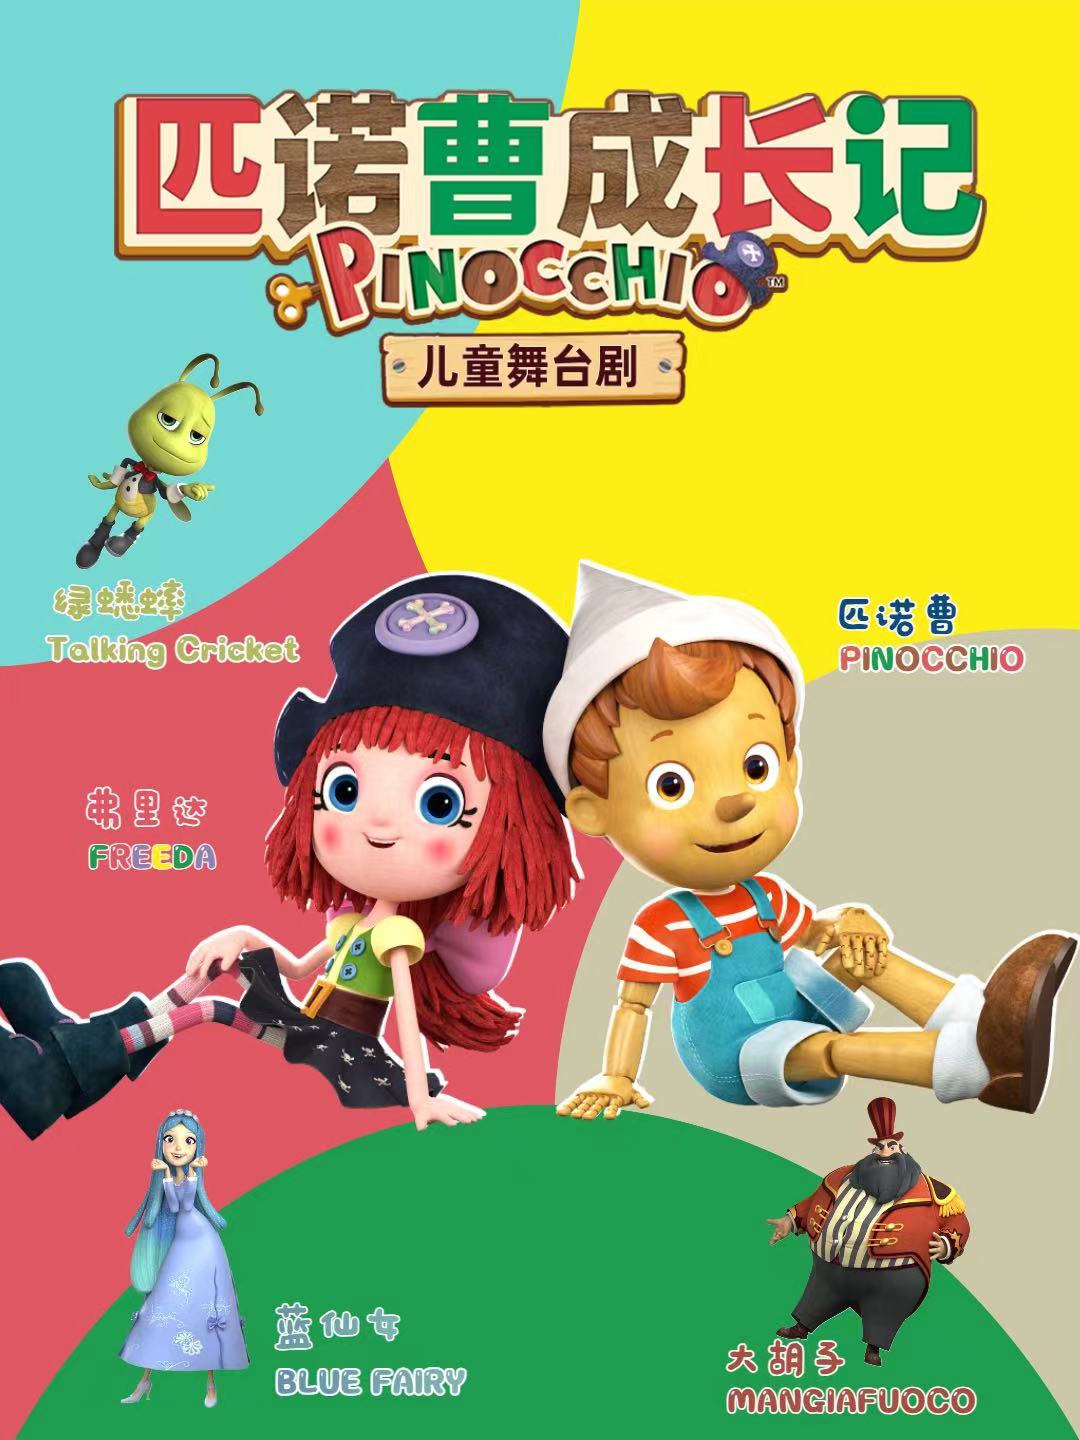 意大利正版儿童剧《匹诺曹成长记》